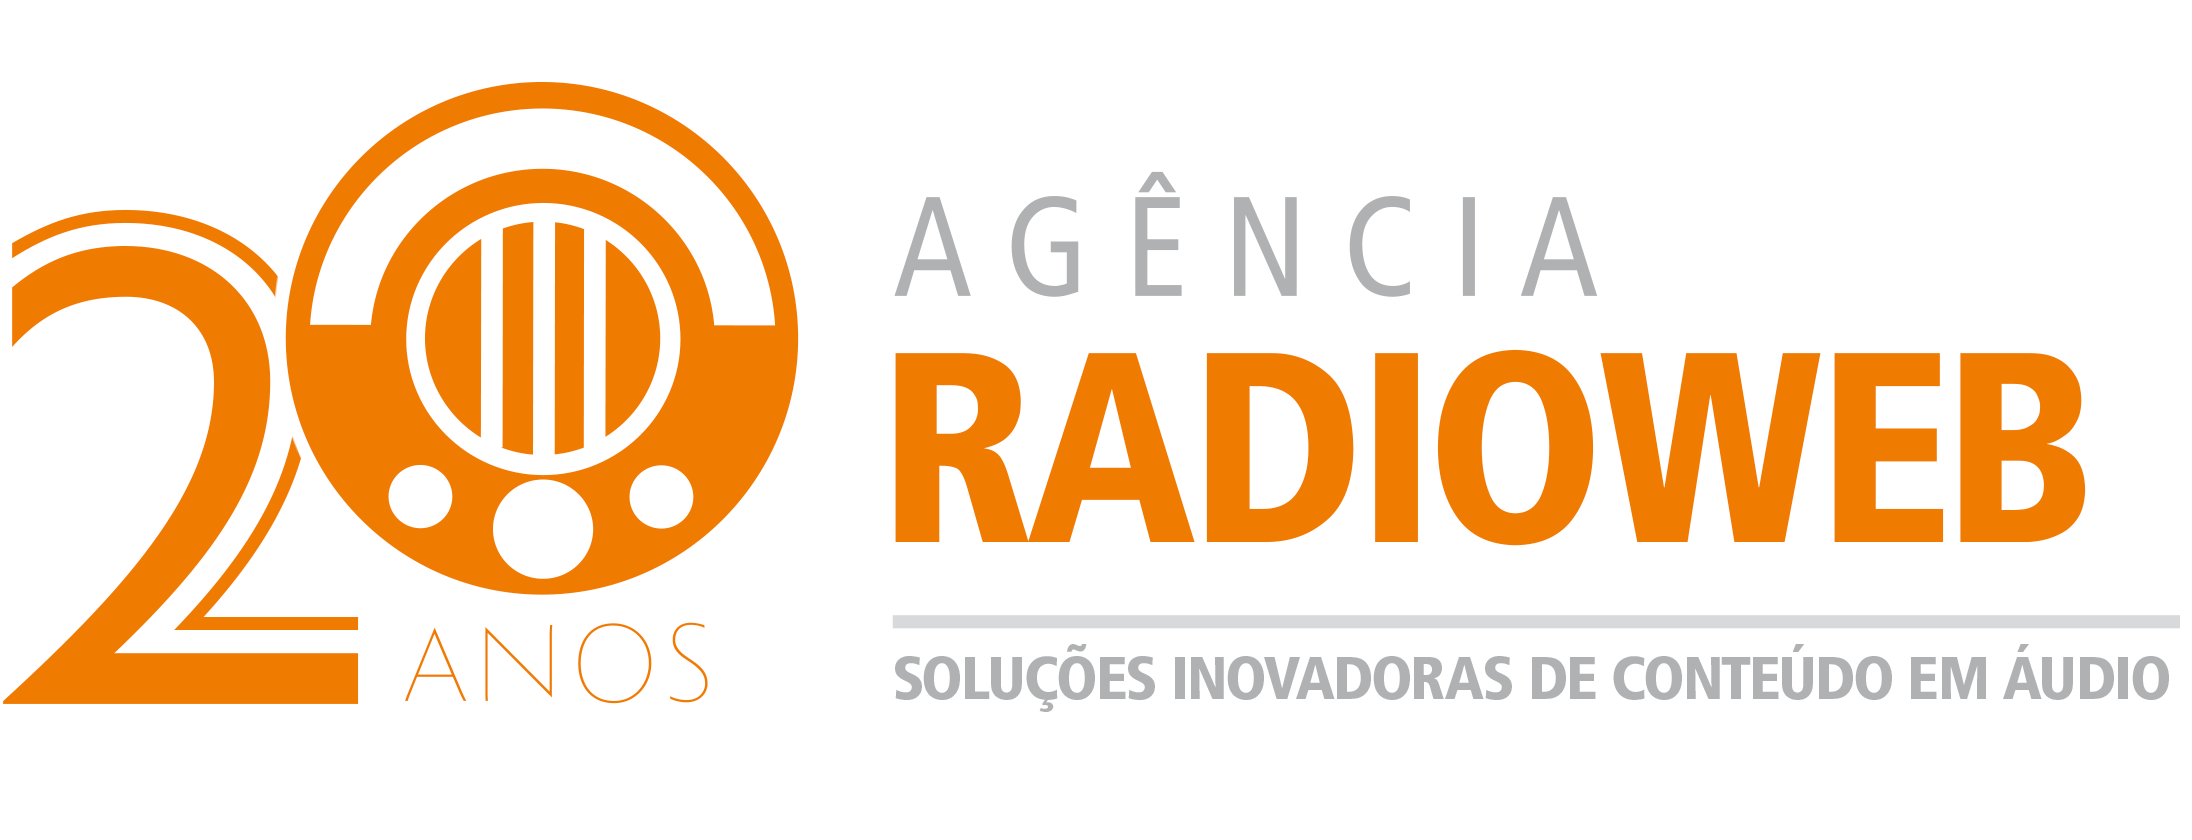 Agência Radioweb, 20 anos: uma jornada de adversidades, derrotas e vitórias